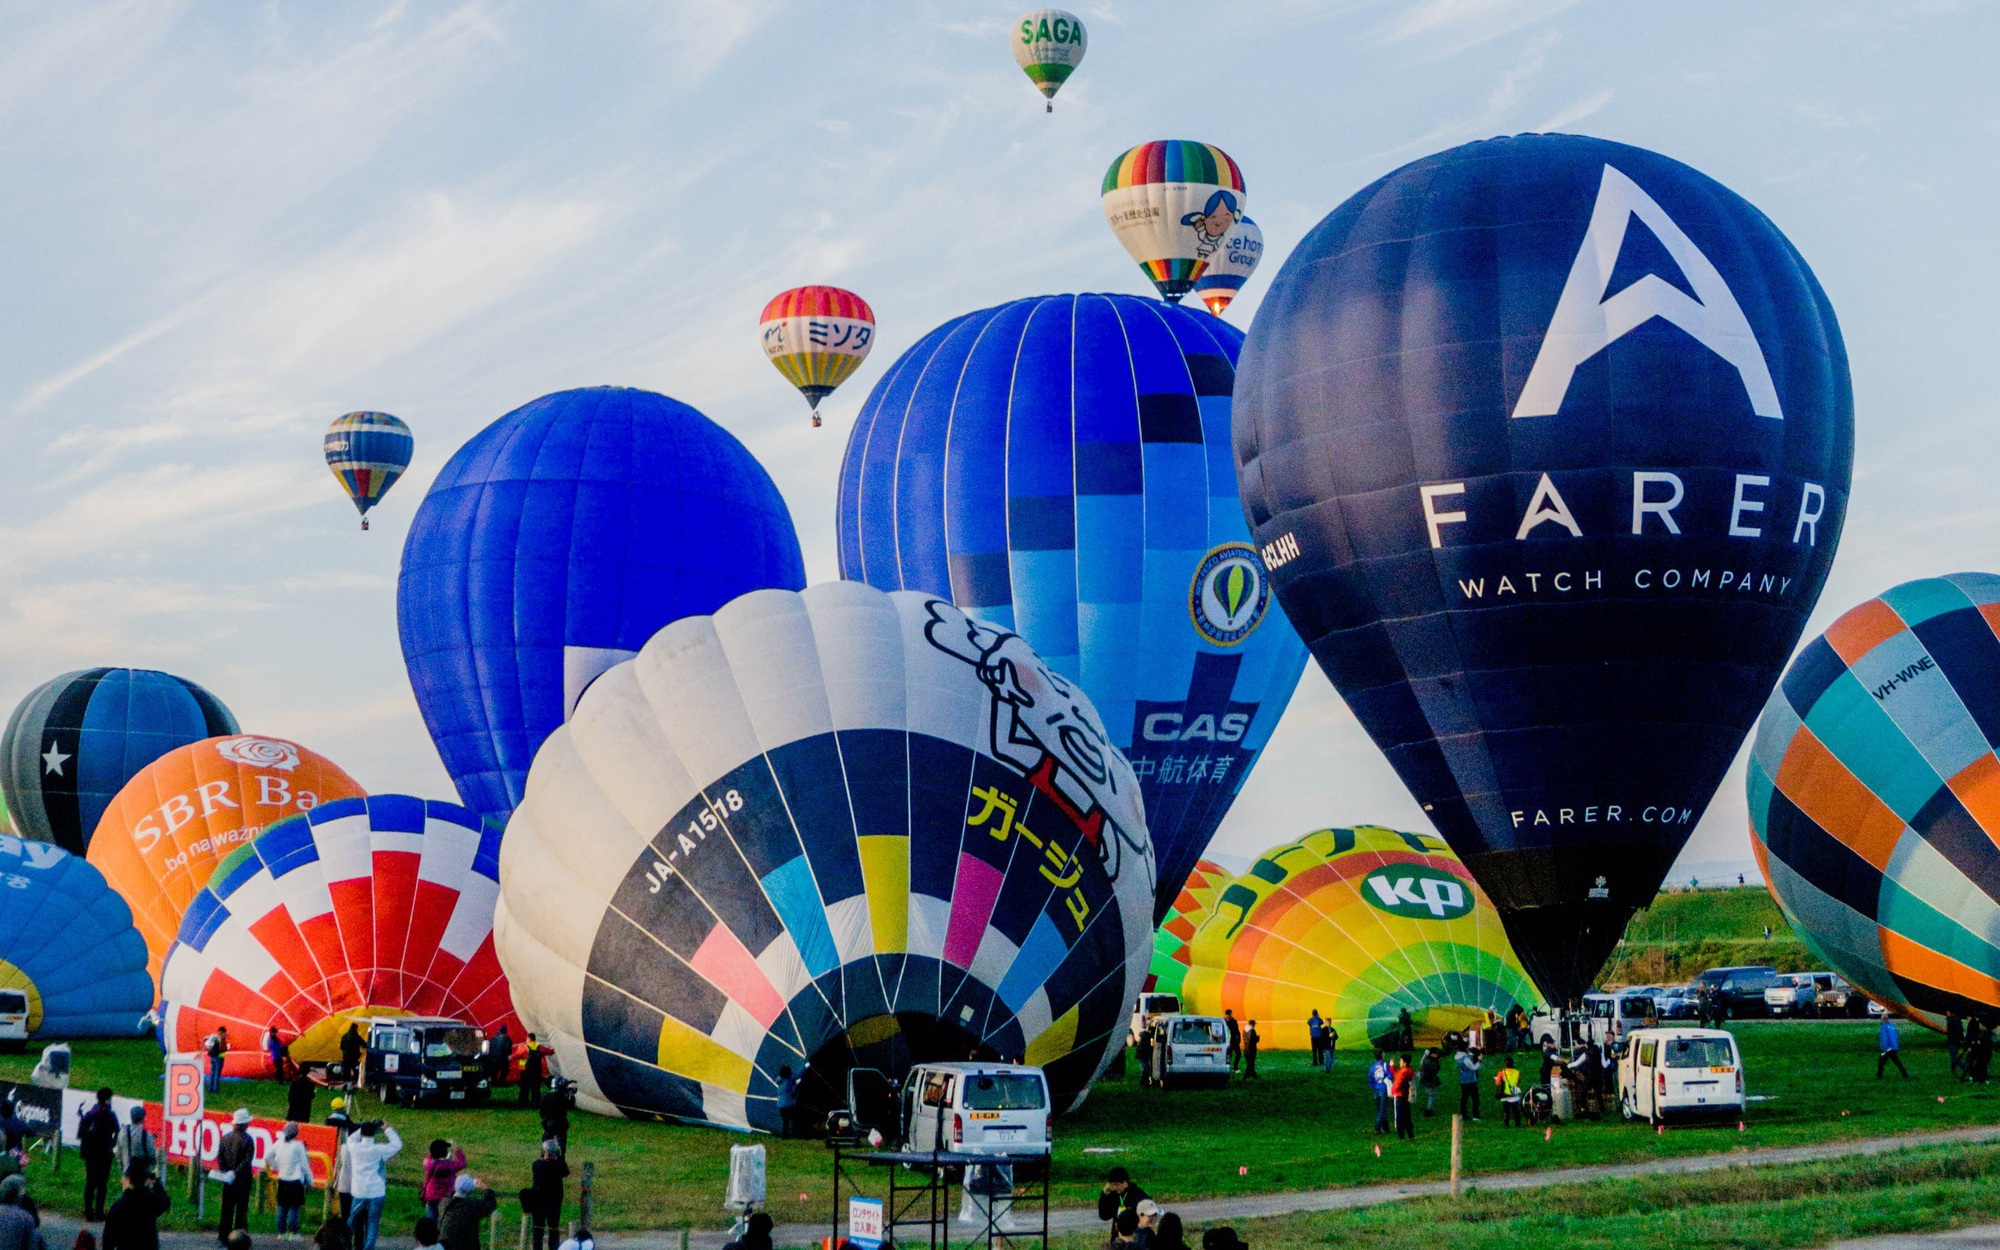 Hot air balloon festival in Japan